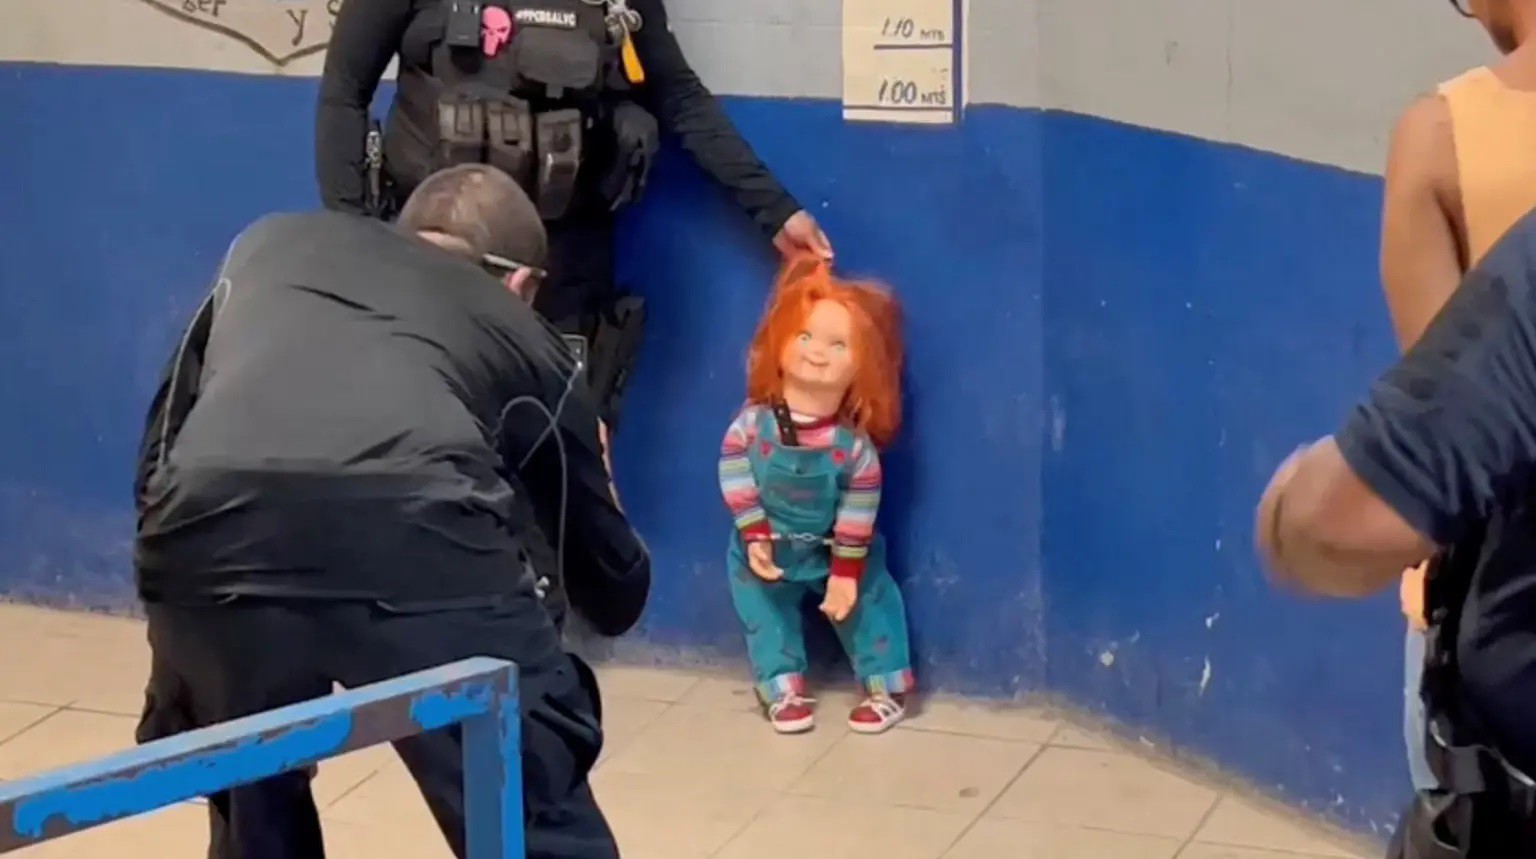 Búp bê Chucky bị còng tay ở đồn cảnh sát (ảnh: NY Post)